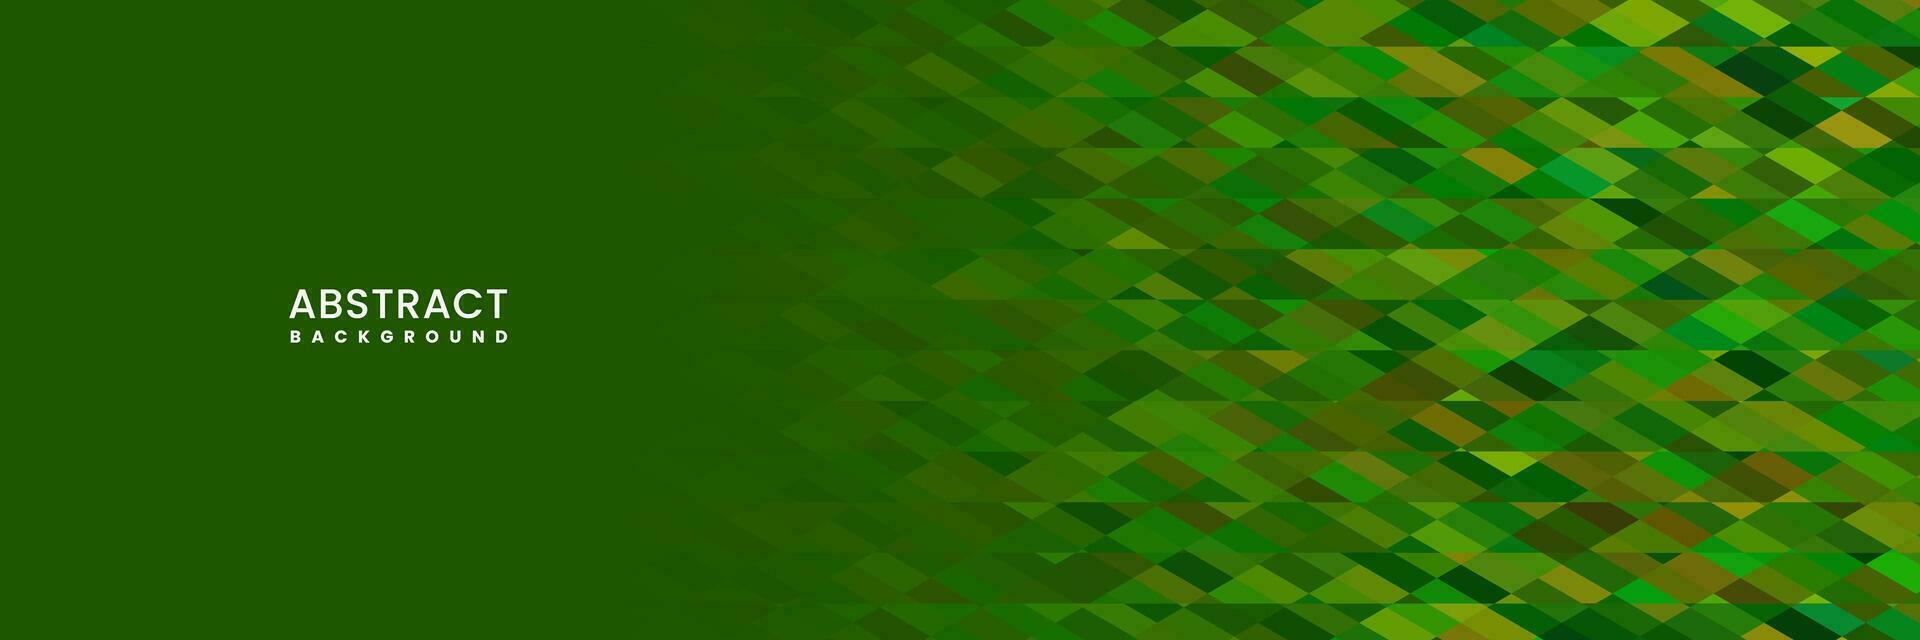 abstrakt Grün bunt beschwingt Hintergrund zum Geschäft vektor